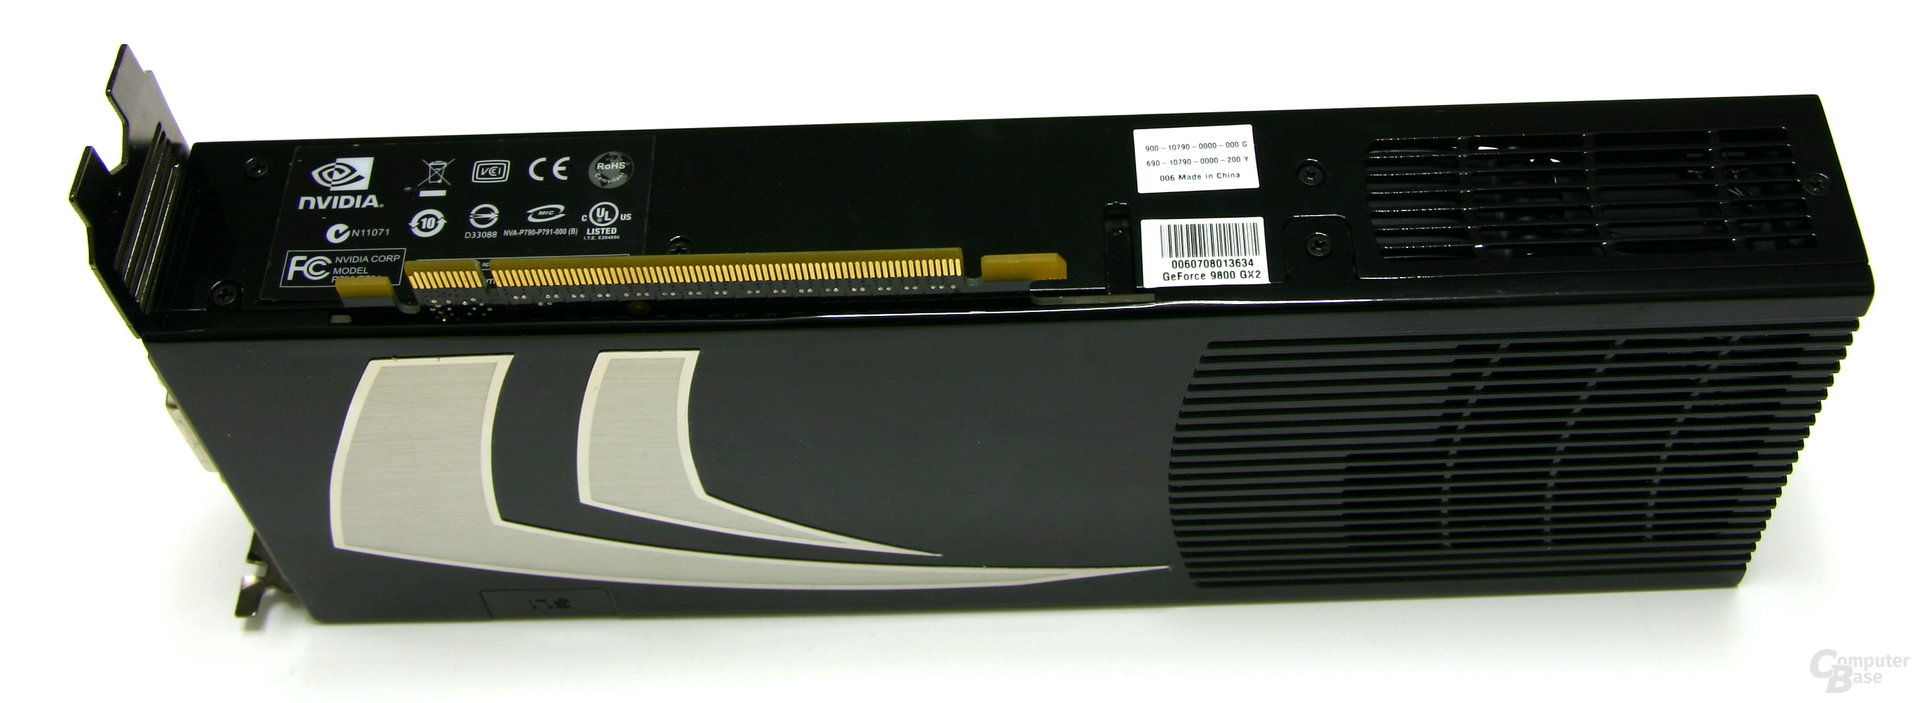 GeForce 9800 GX2 Unterseite